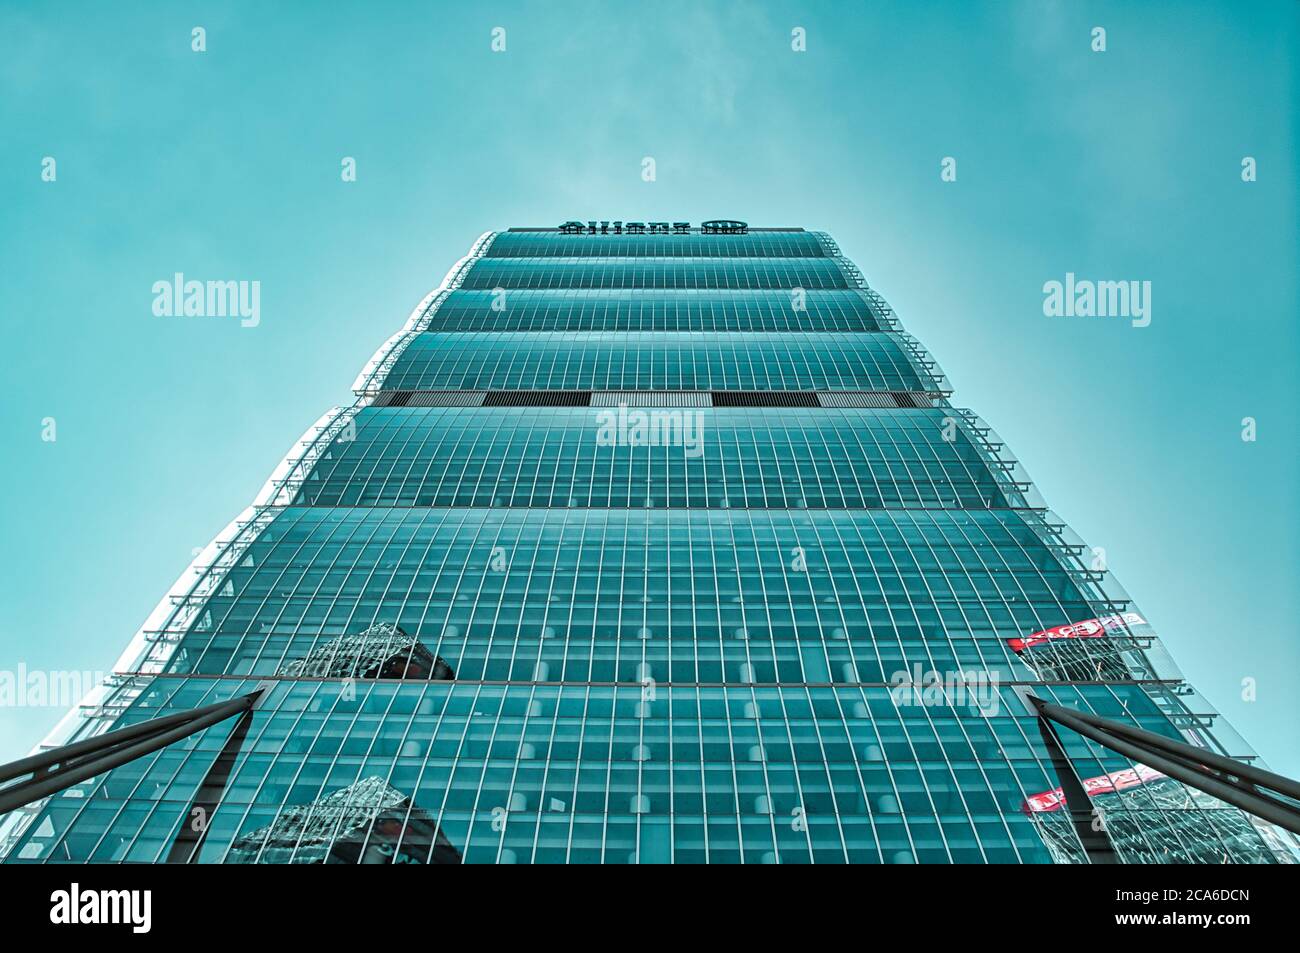 Milan, Italy 08.03.2020: Arata Isozaki & Andrea Maffei - Allianz Tower, Il Dritto,The Straight One headquarter of the Allianz Group in the new, modern Stock Photo